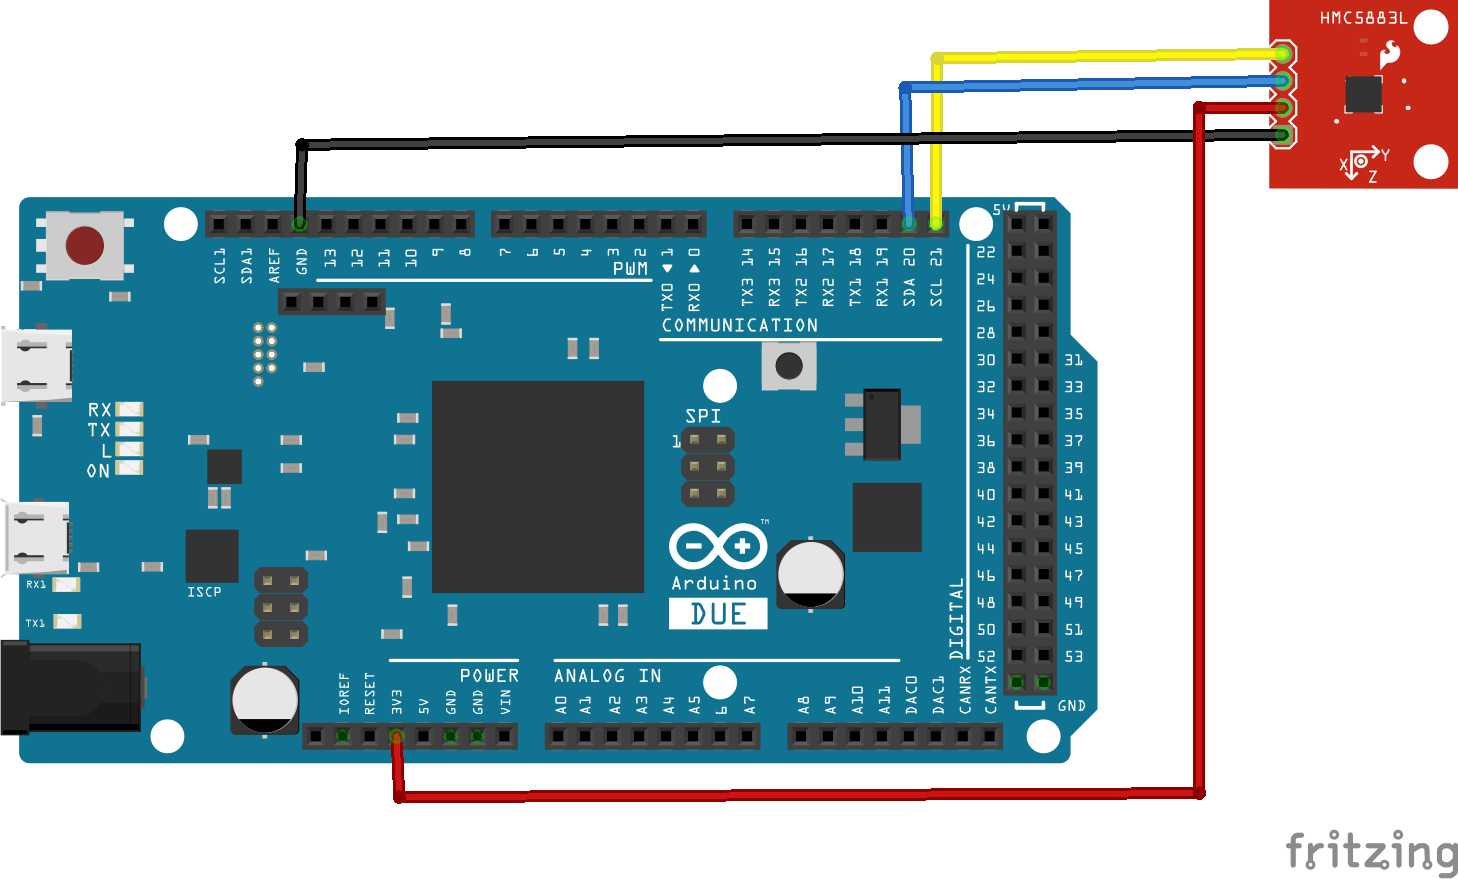 Arduino Due and HMC5883L